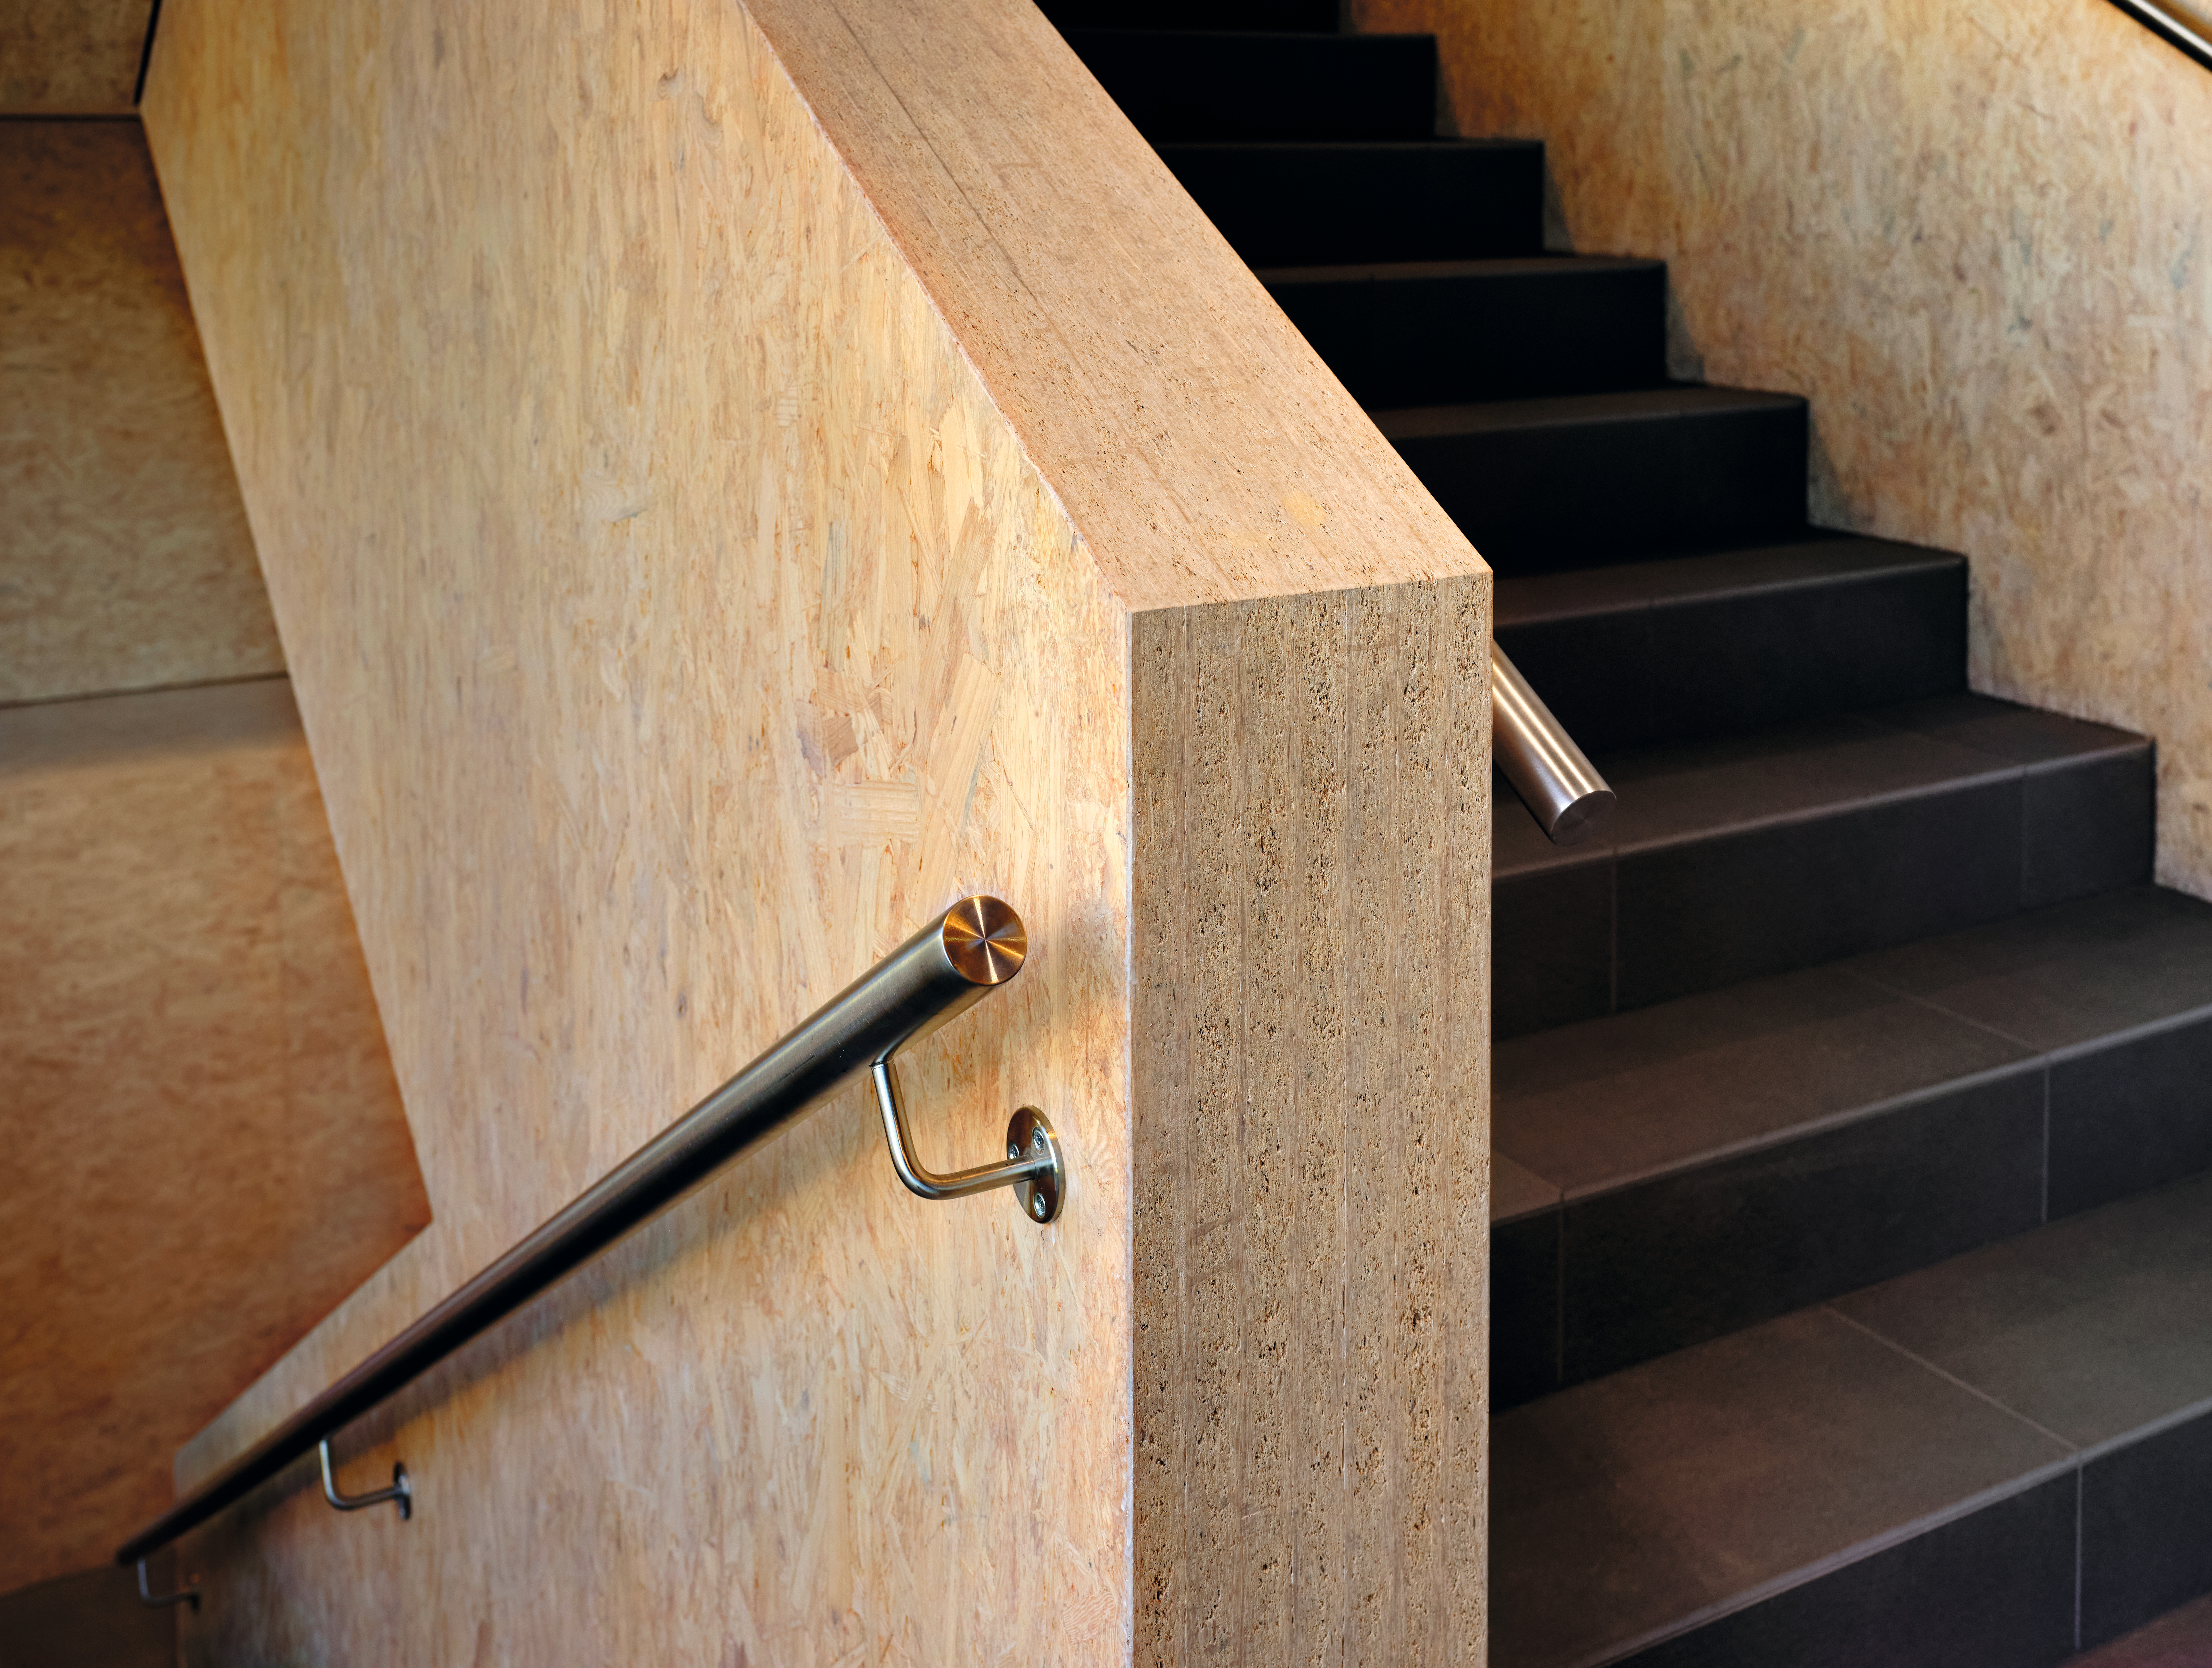 Klejone płyty OSB tworzą konstrukcję schodów o dużej nośności